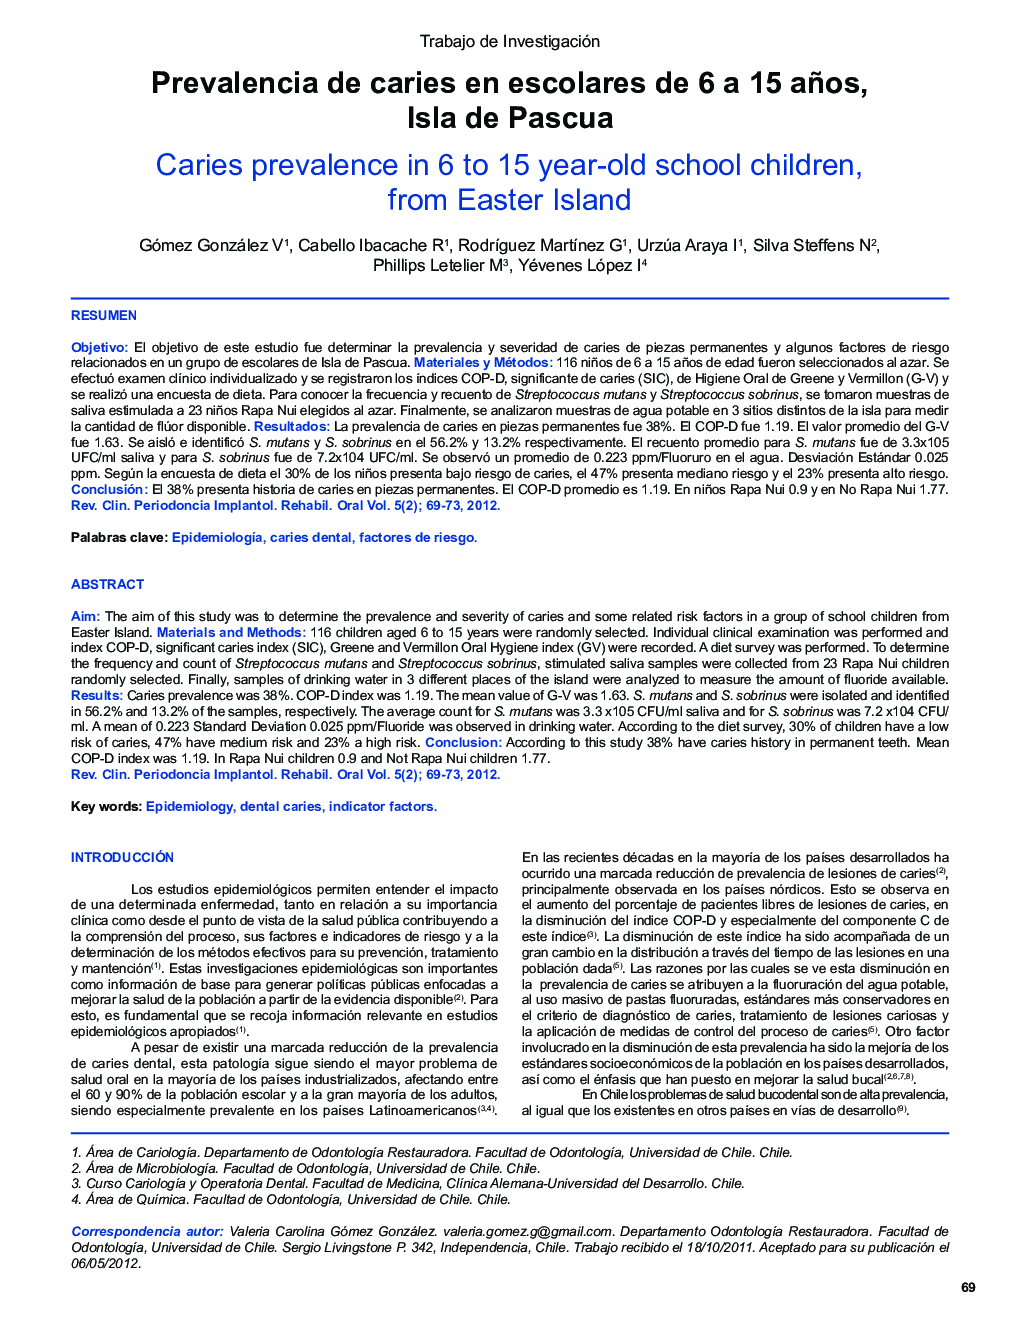 Prevalencia de caries en escolares de 6 a 15 años, Isla de Pascua